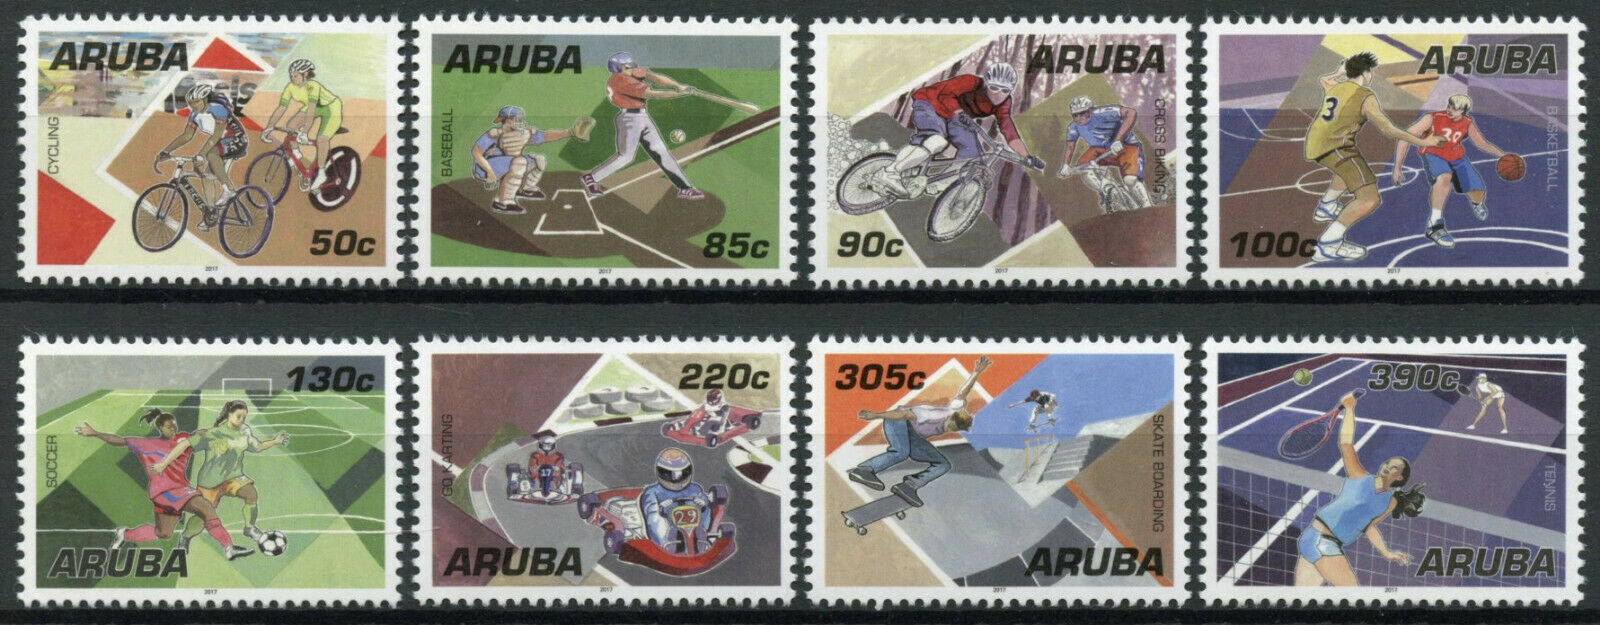 Aruba Sports Stamps 2017 MNH Cycling Tennis Basketball Baseball Football 8v Set